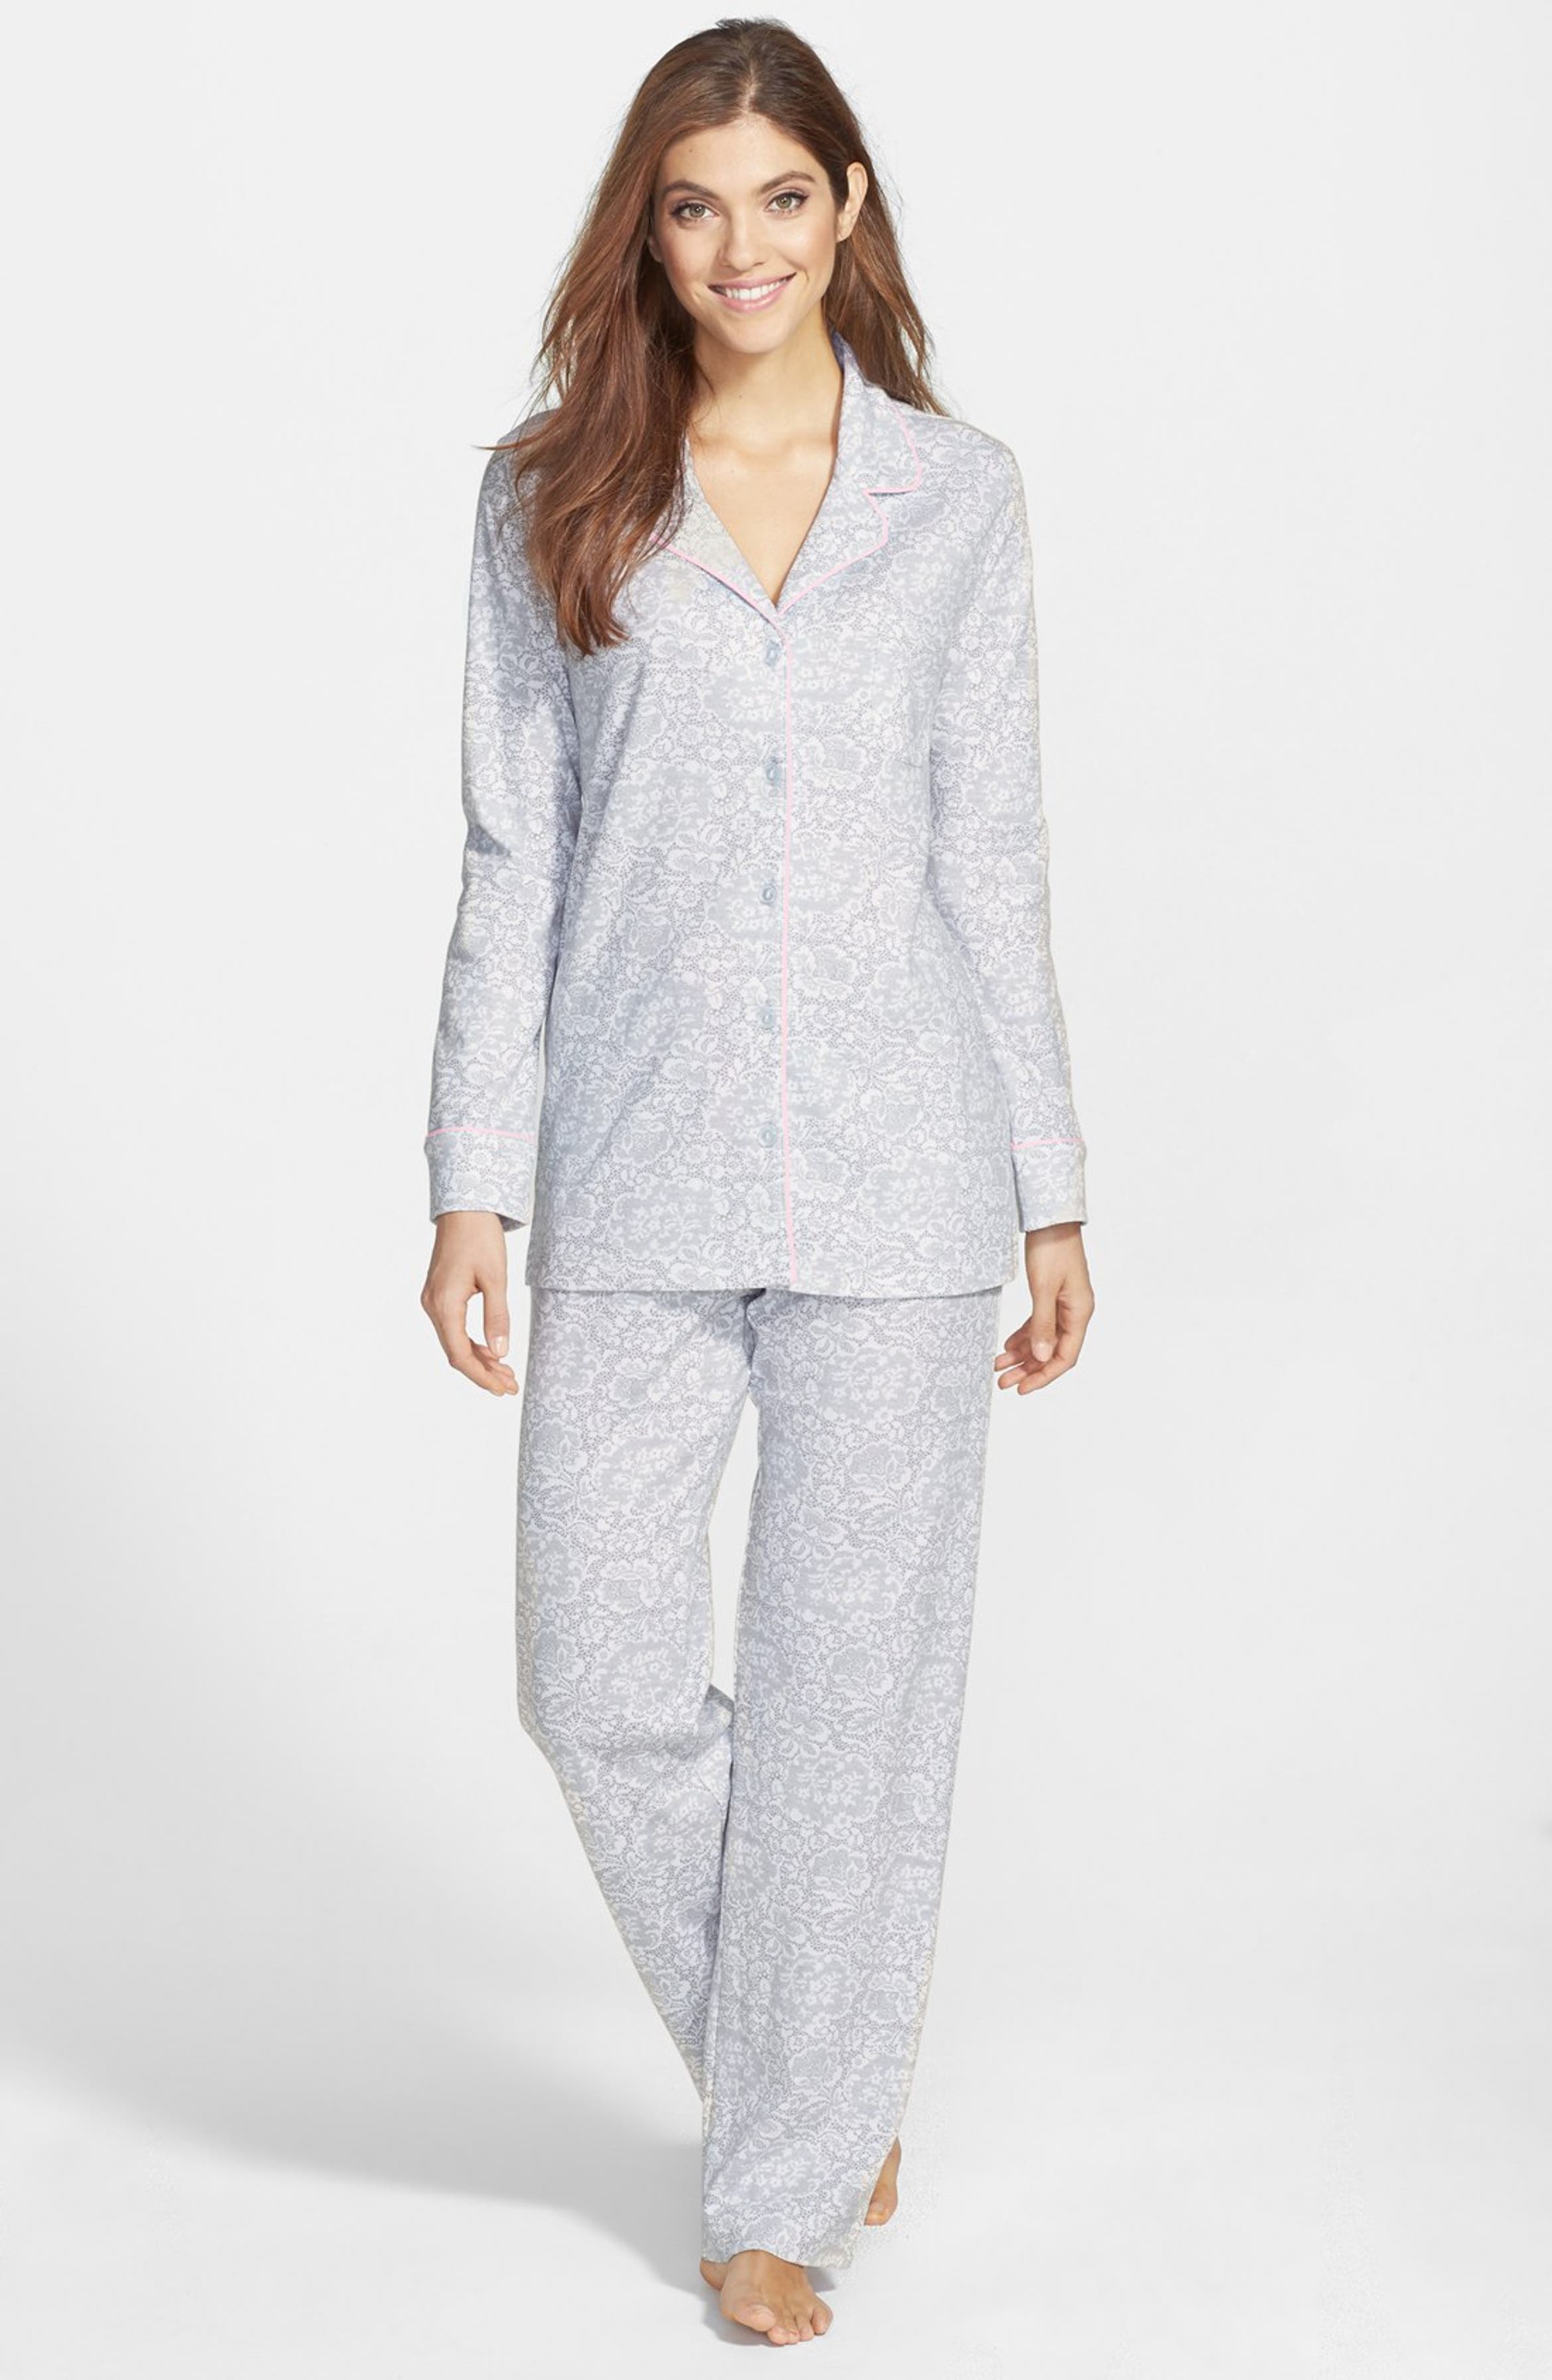 Carole Hochman Designs Cotton Jersey Pajamas | Nordstrom